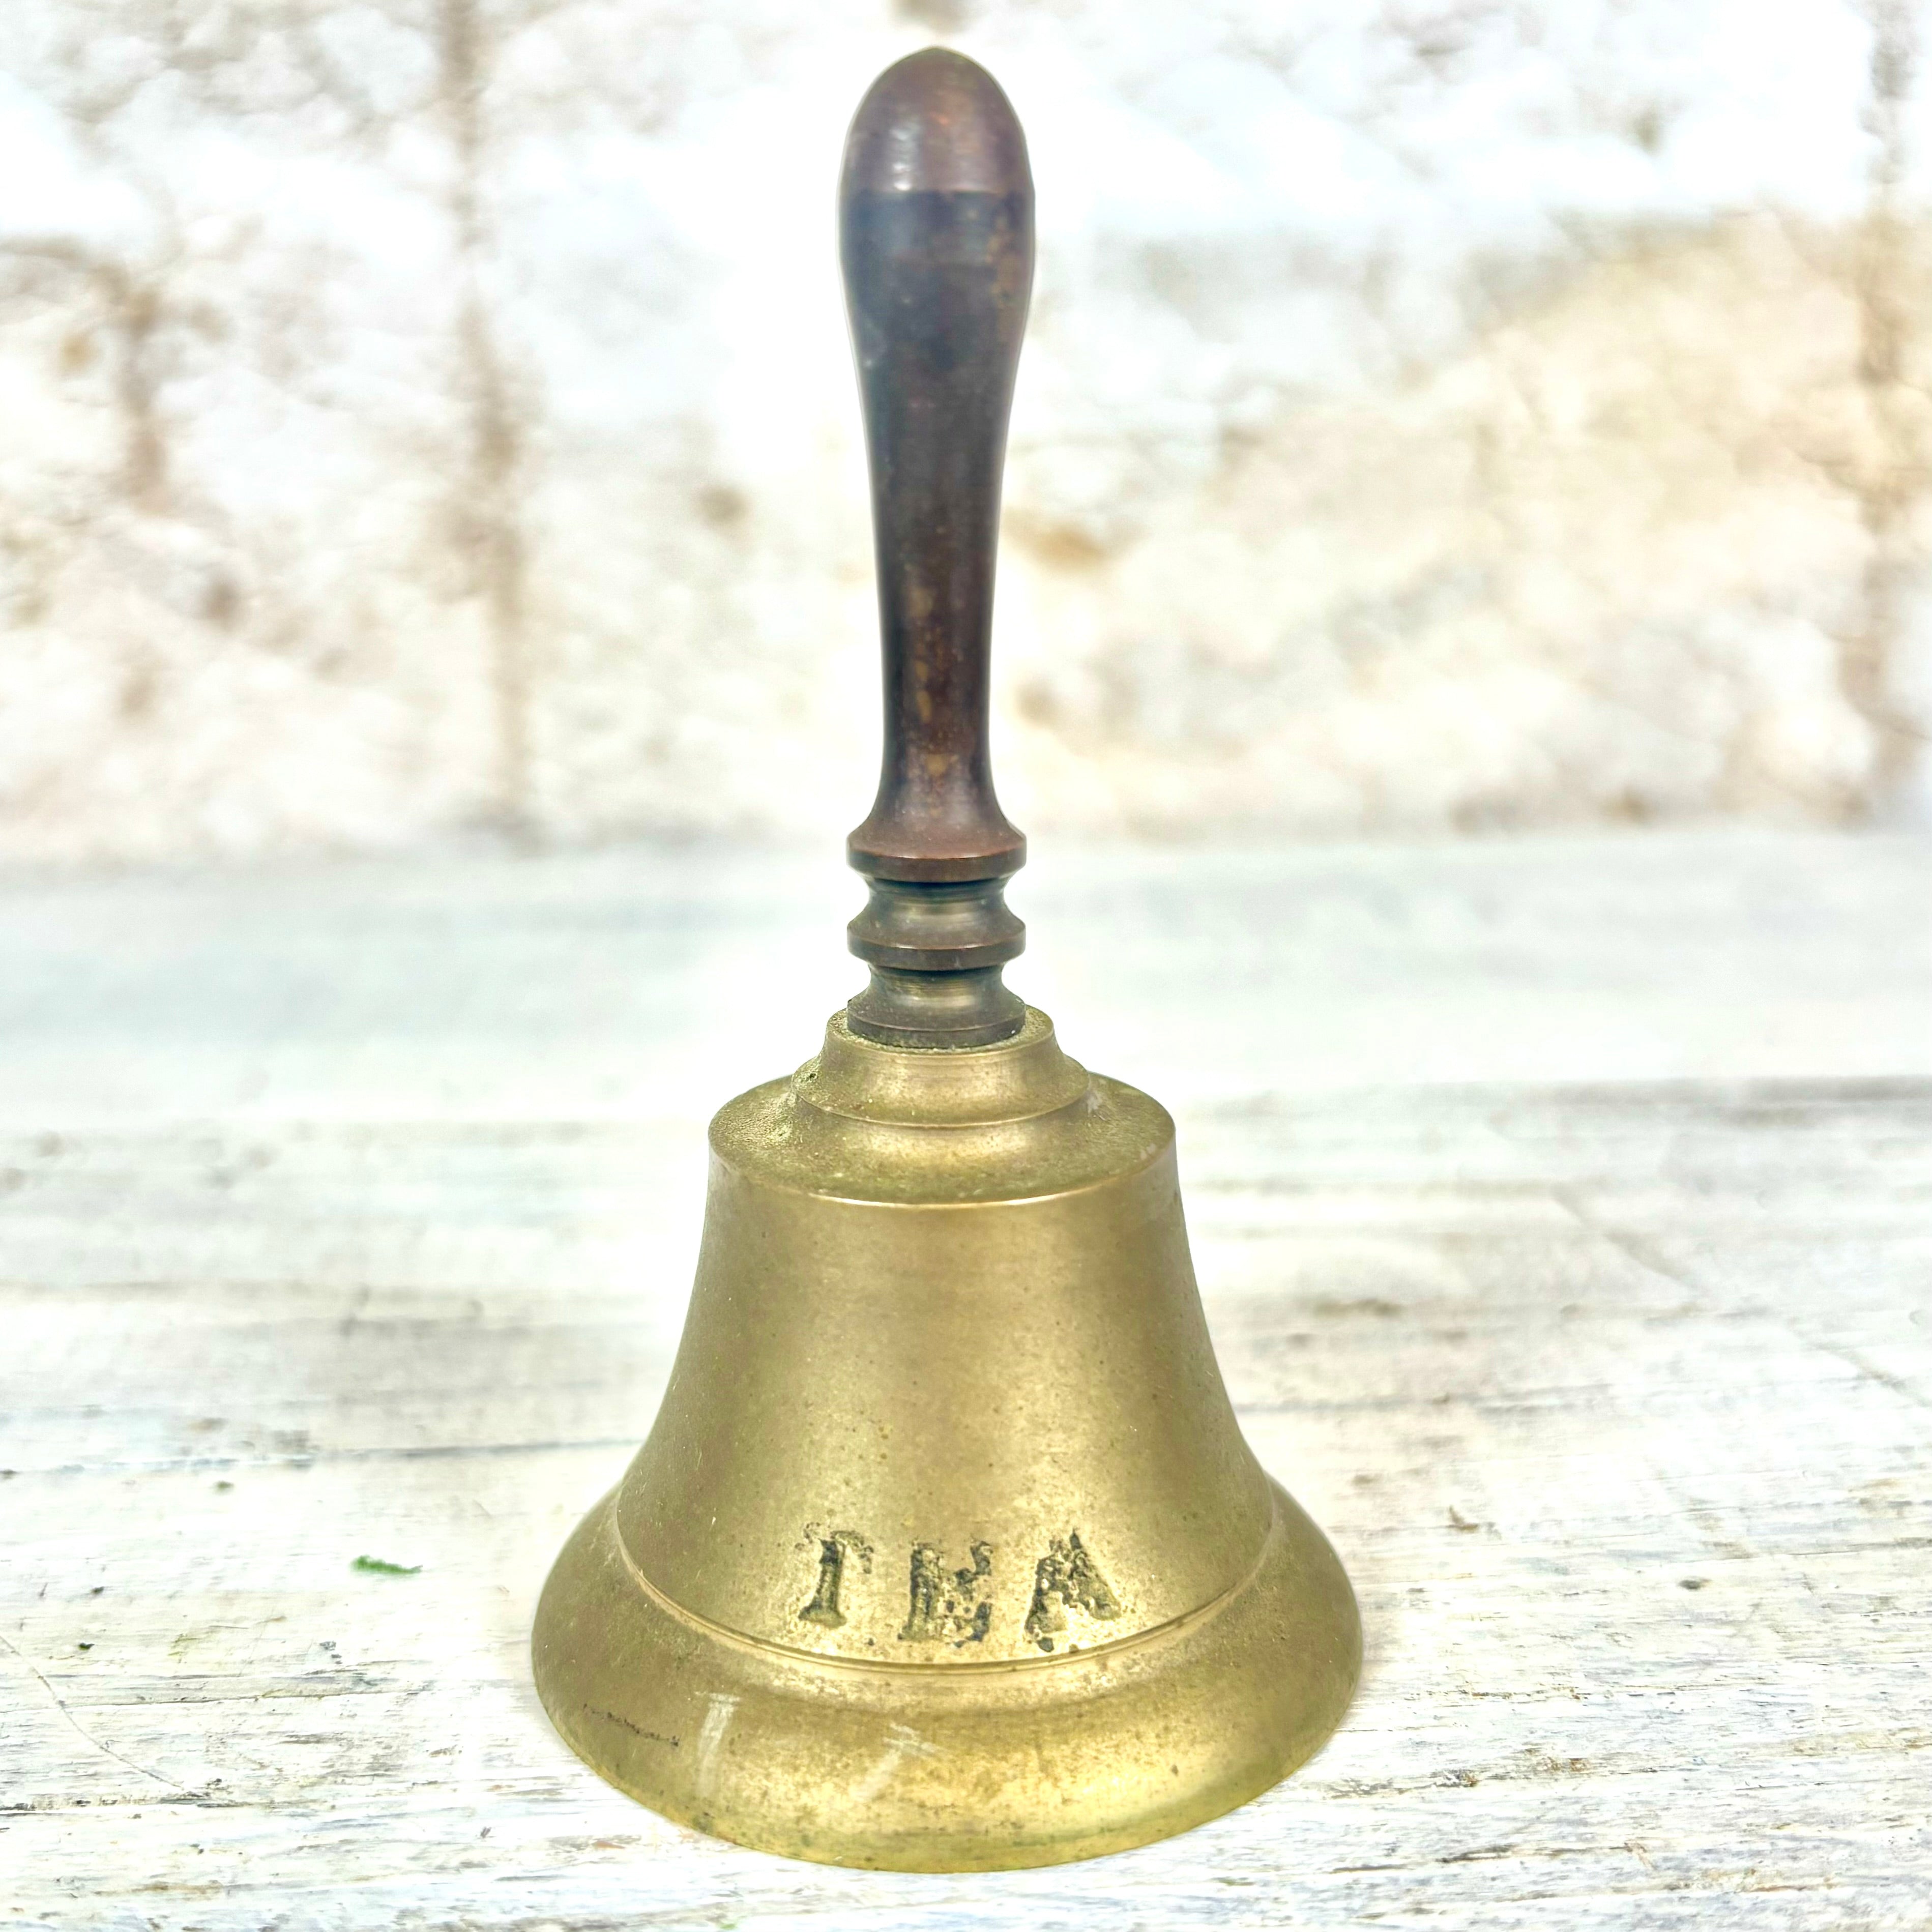 Brass Tea Bell